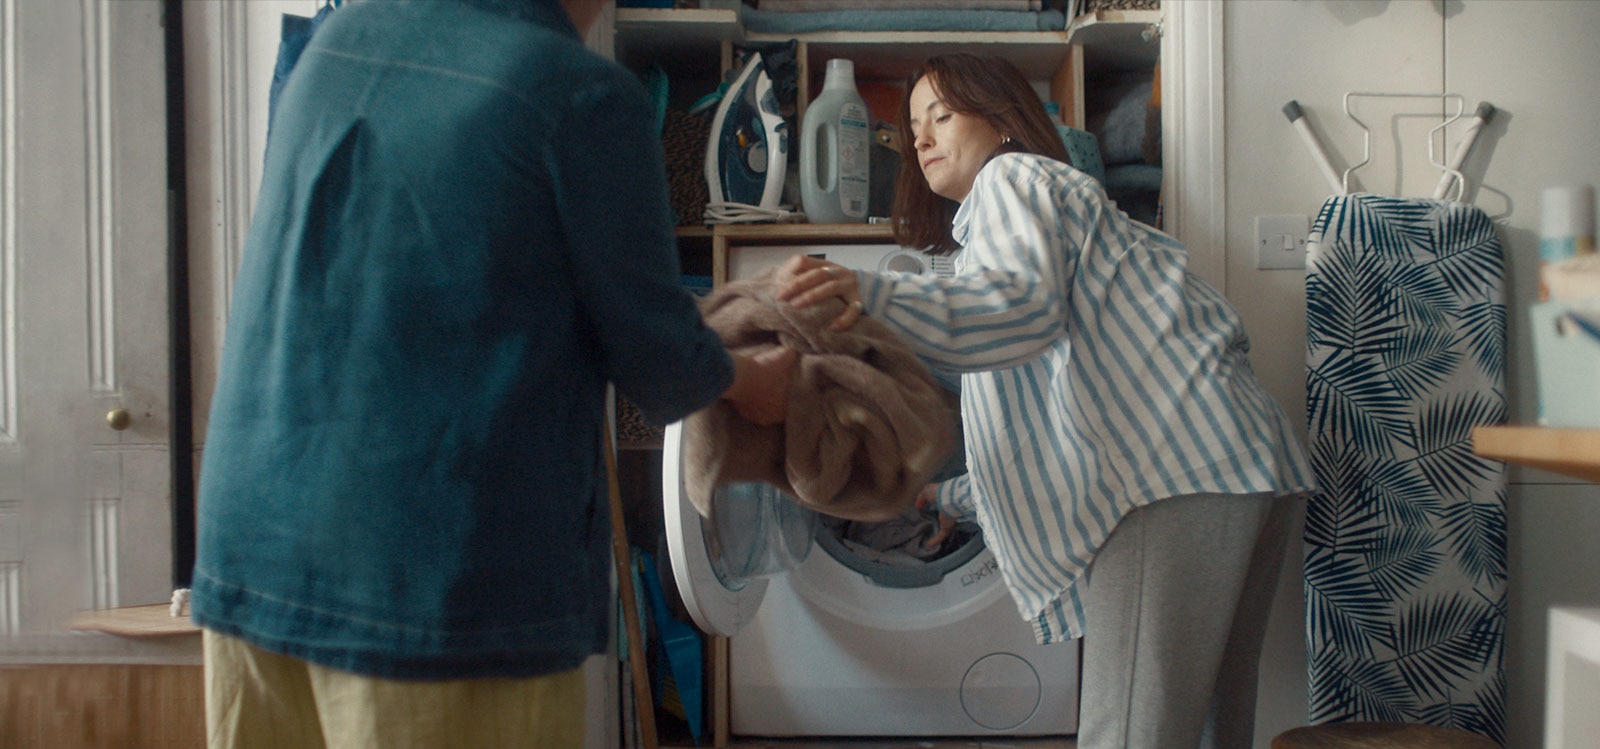 Žena vyndává prádlo z pračky a předává ho své mamince.